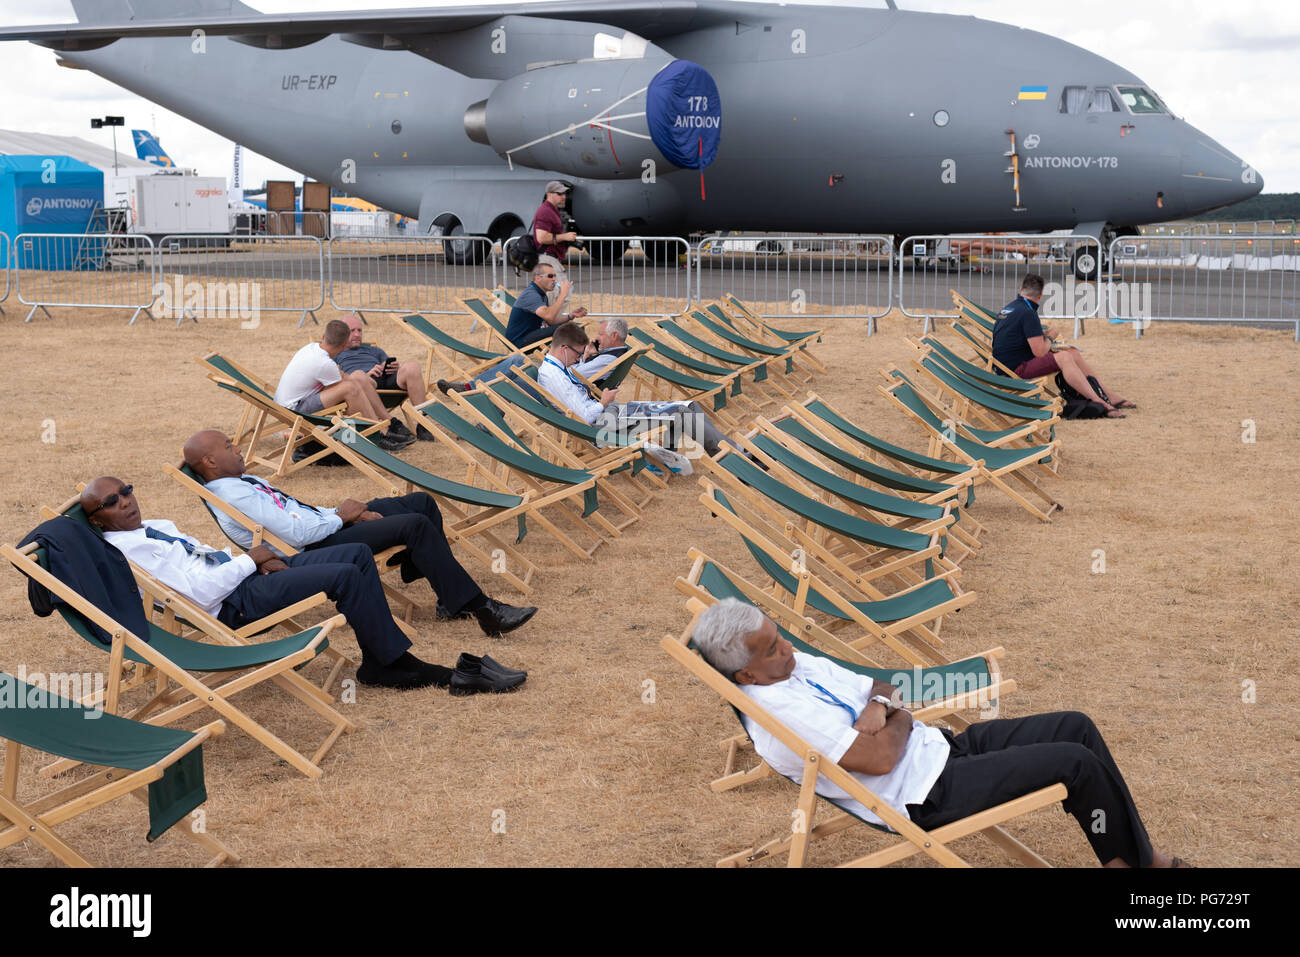 Entspannen Sie in Liegestühlen auf der Farnborough Airshow mit einer russischen Antonov 178 in Hintergrund und verbrannte Gras von der Sommerhitze Stockfoto